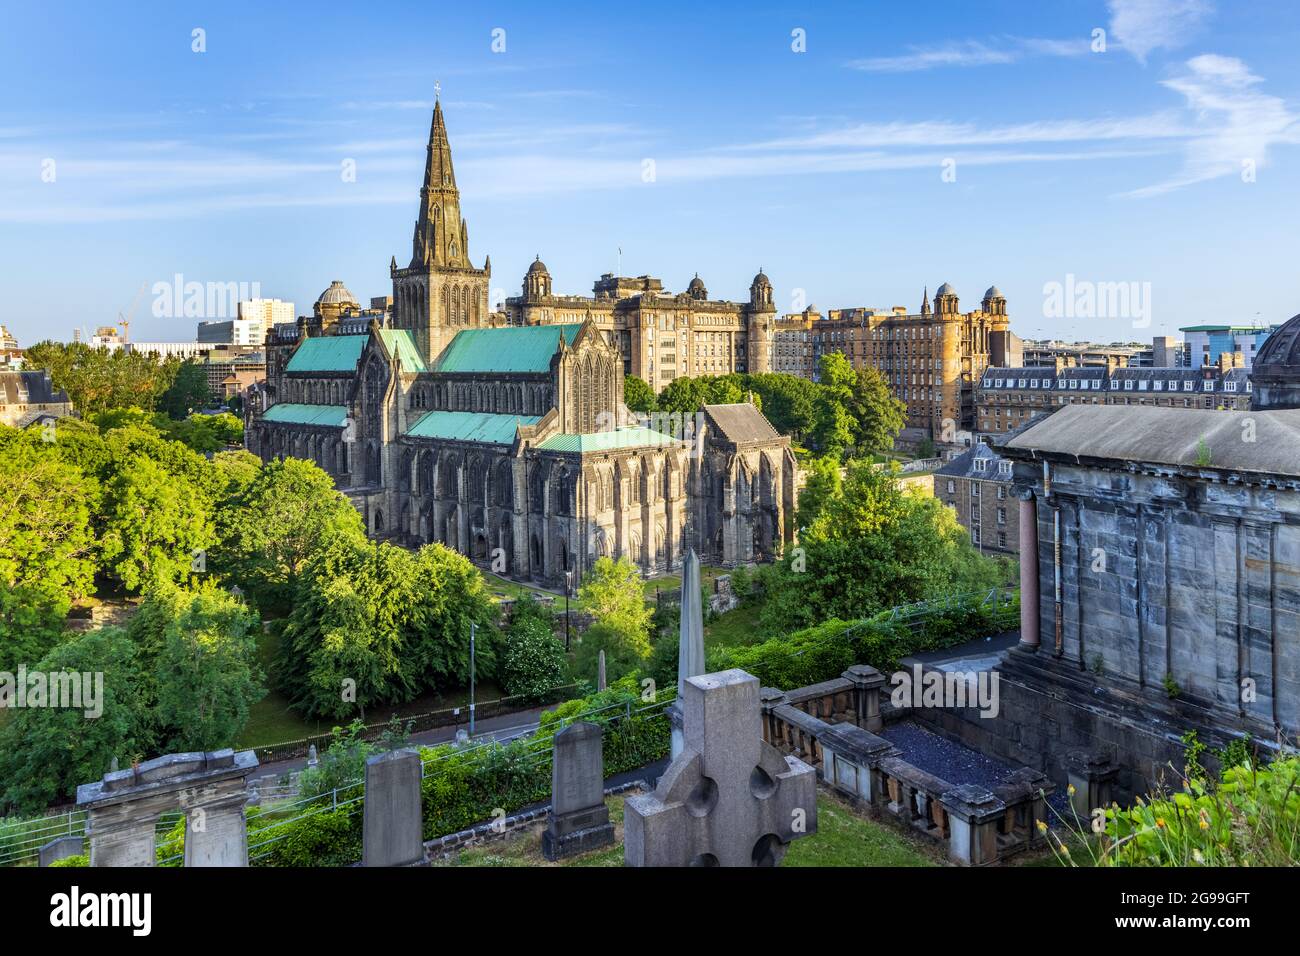 La cathédrale de Glasgow, la plus ancienne cathédrale de l'Écosse continentale, et l'Old Royal Infirmary, tirées du cimetière victorien de la nécropole. Banque D'Images